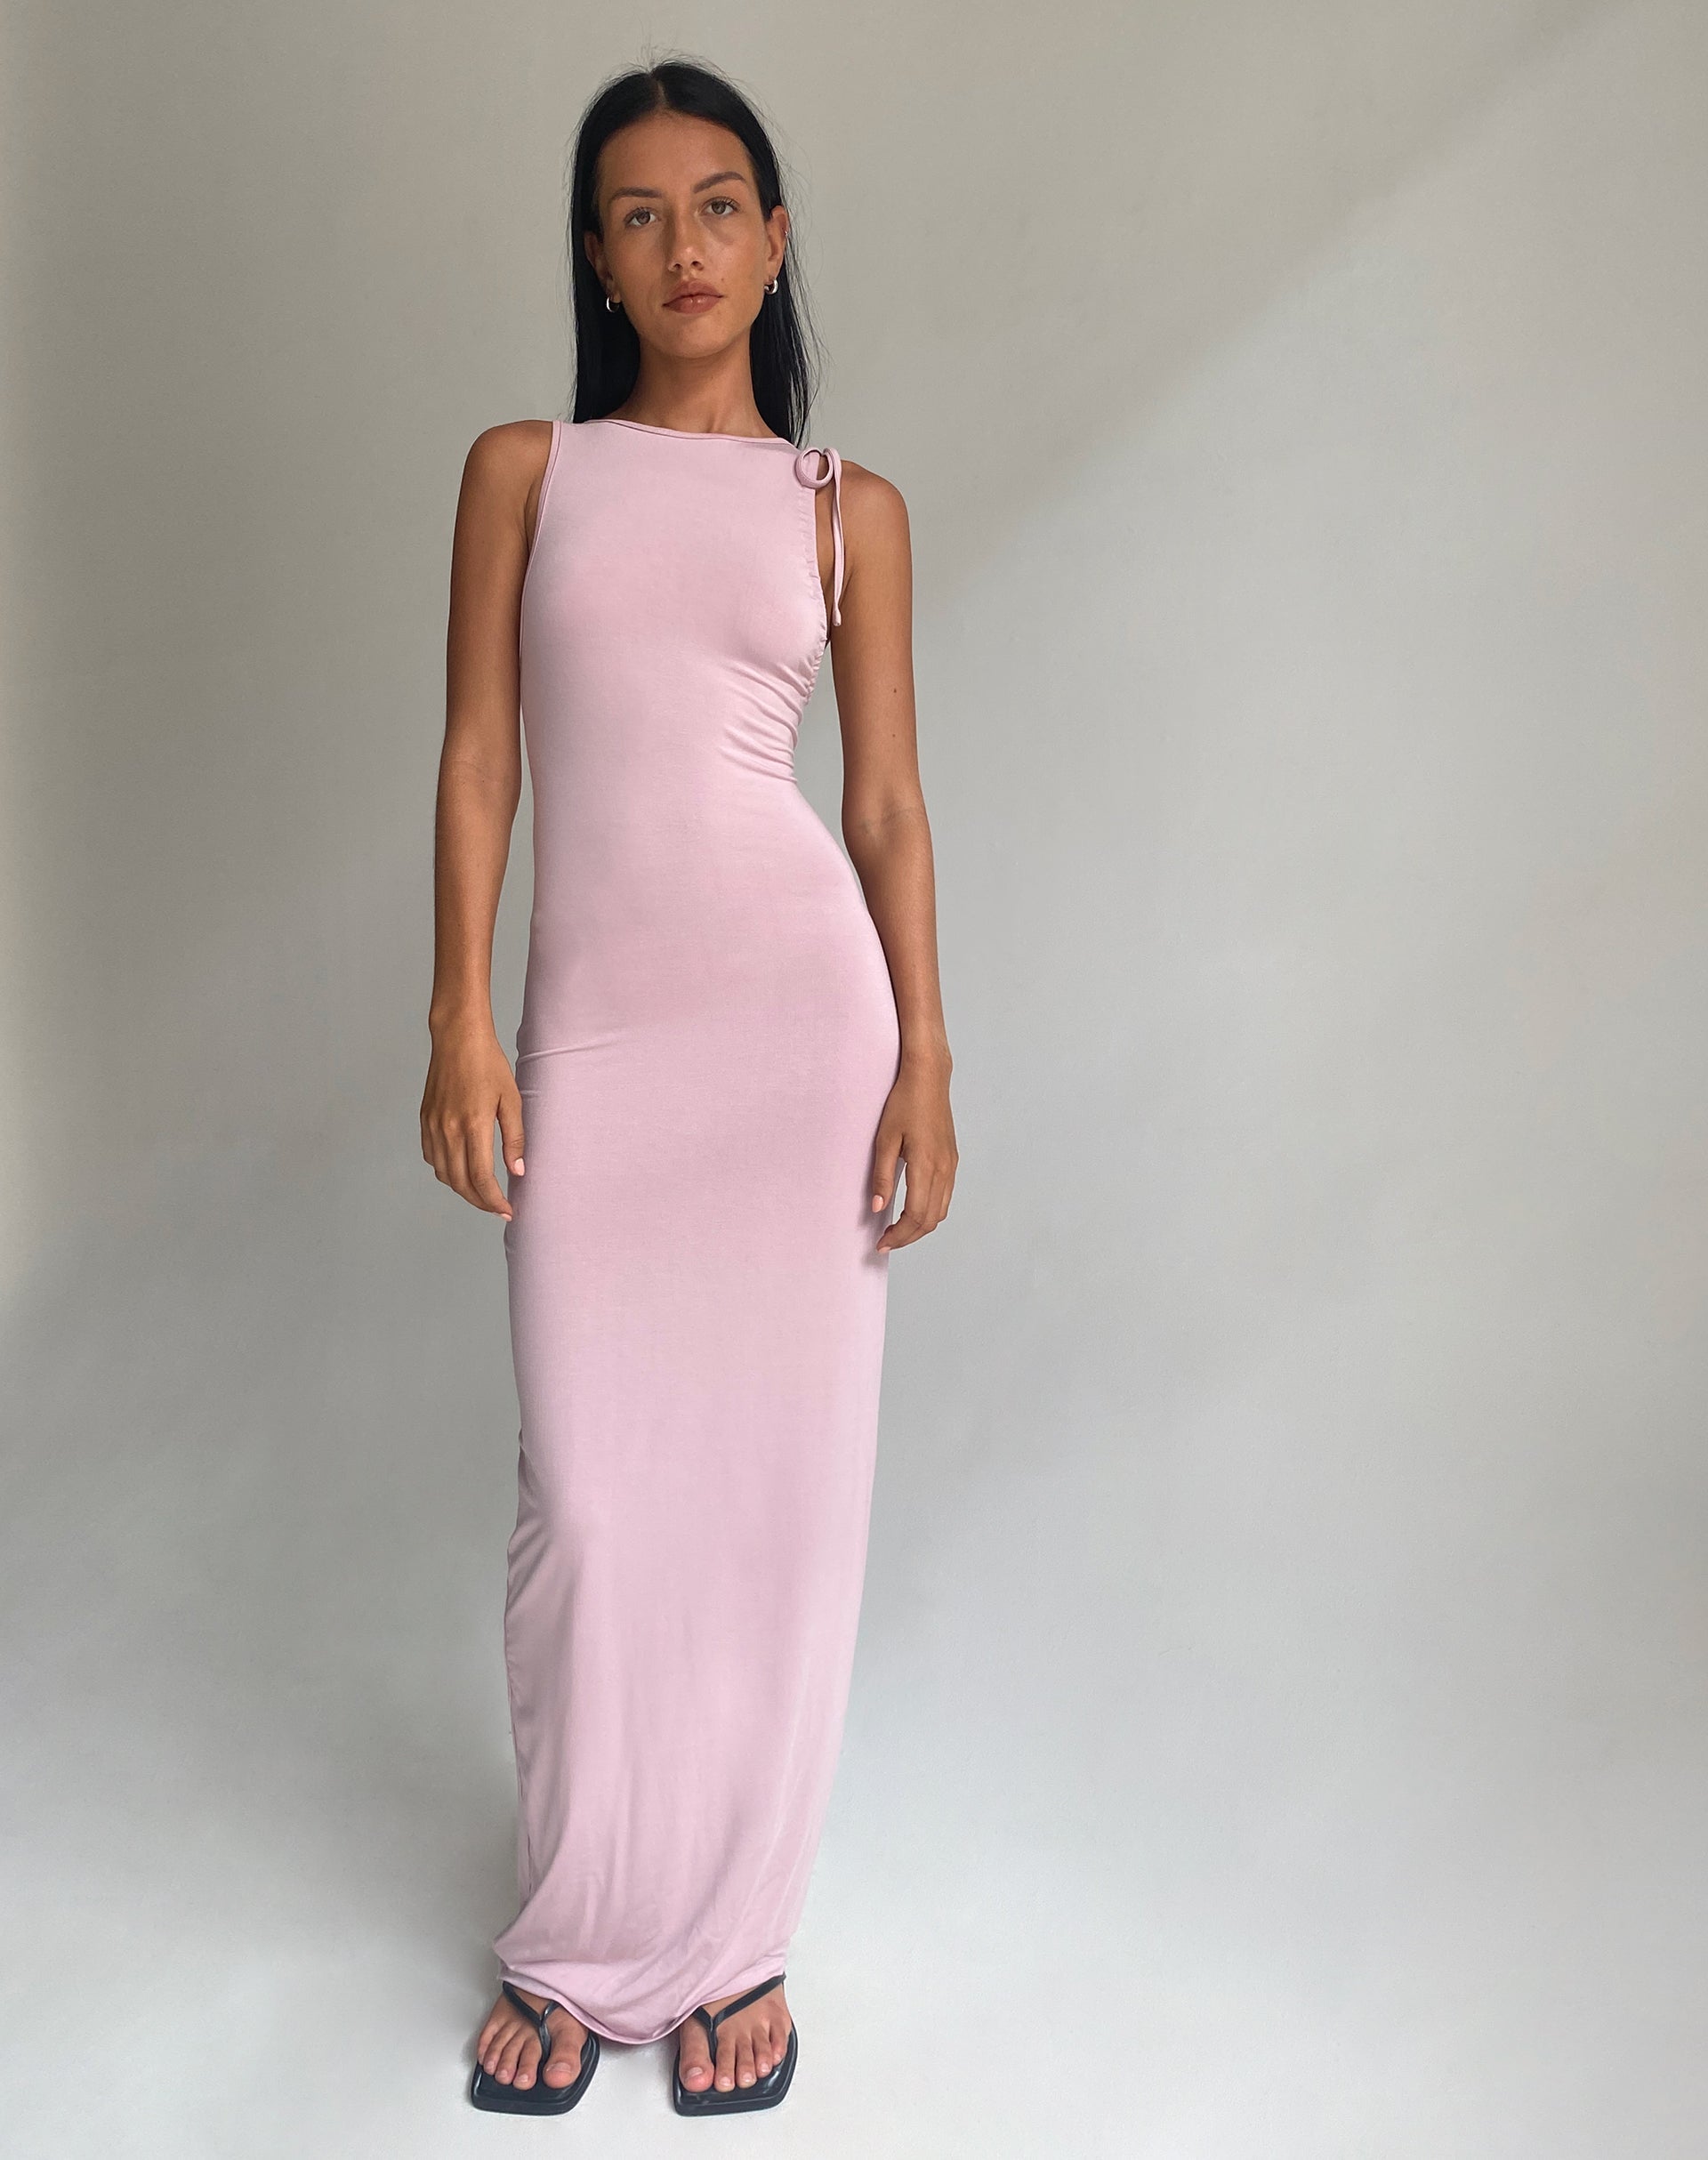 Light Pink Lace Mesh Overlay Maternity Maxi Dress– PinkBlush